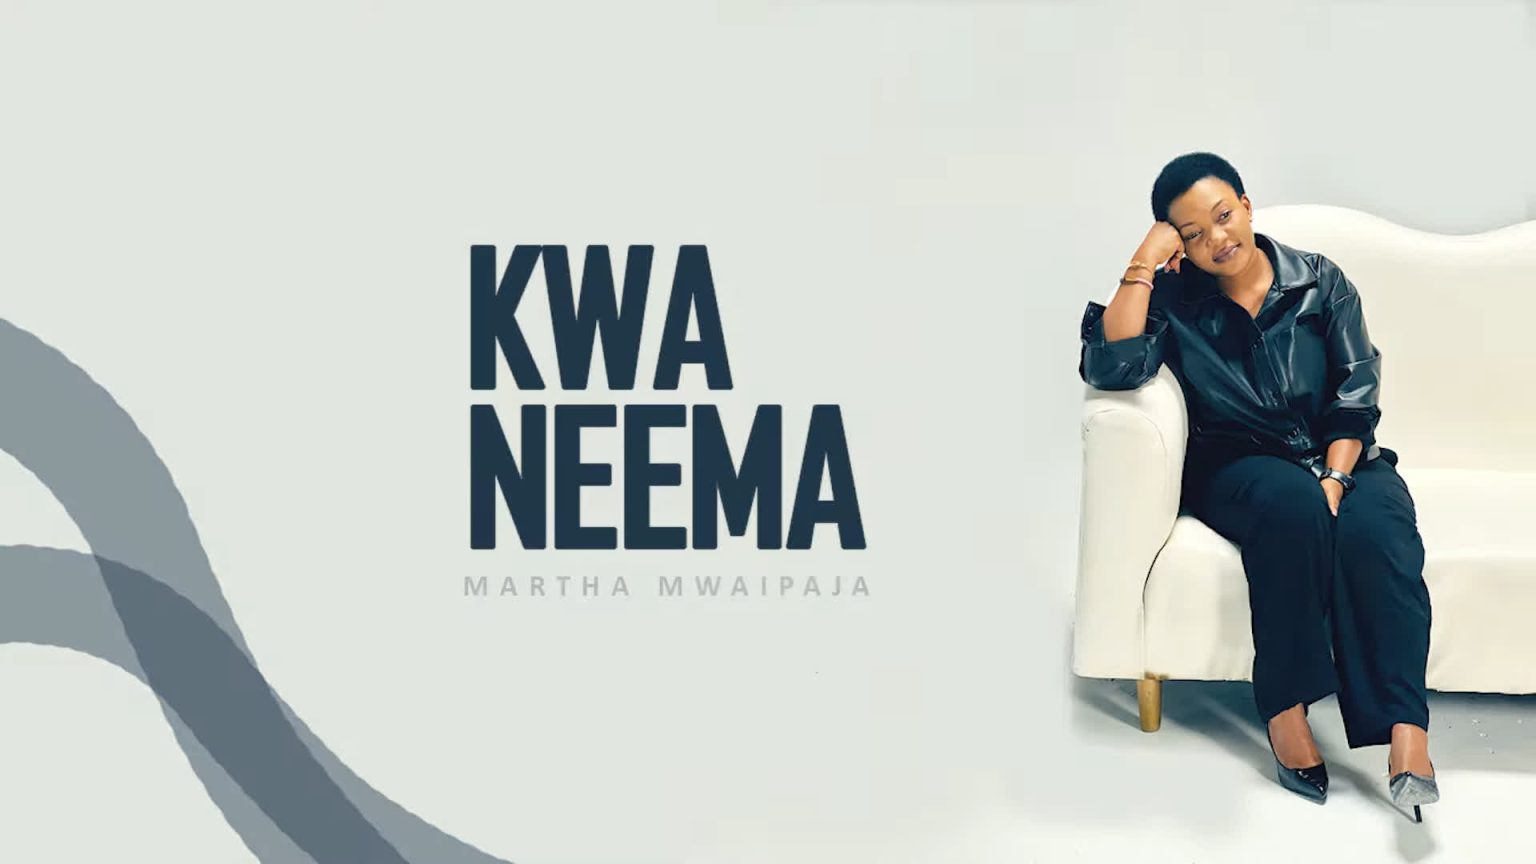  Martha Mwaipaja – Kwa Neema